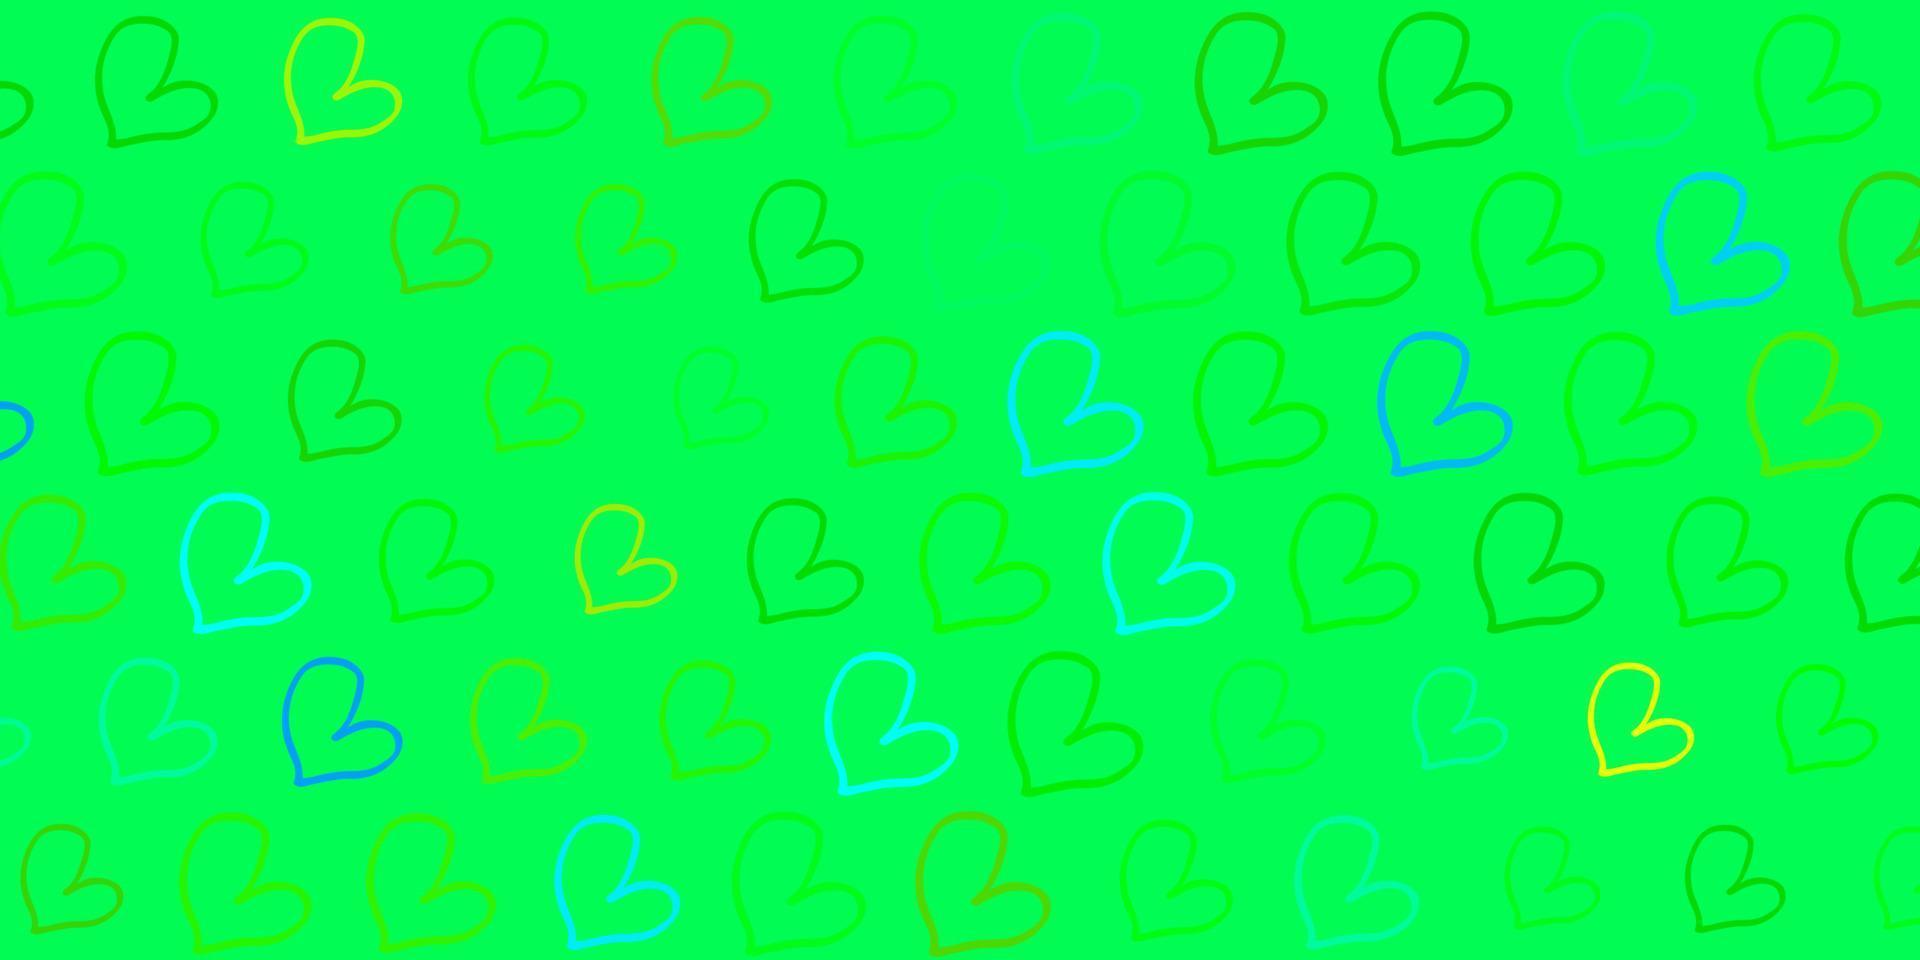 modelo de vetor azul claro e verde com corações de doodle.